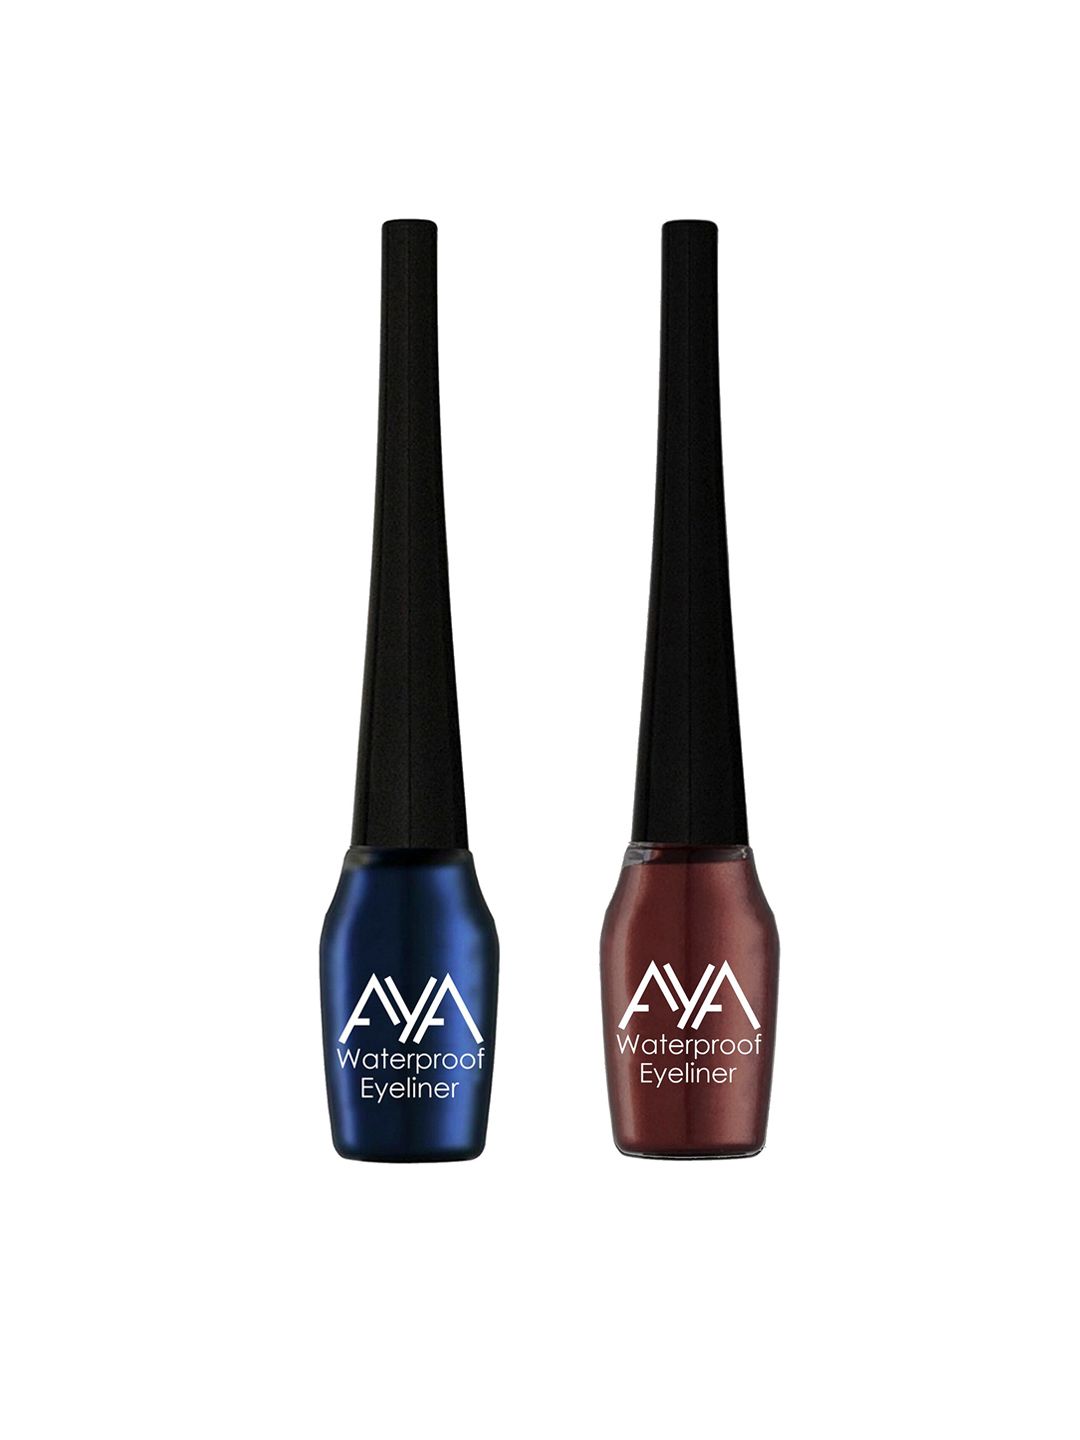 AYA Set of 2 Waterproof Eyeliner - Blue & Brown - 5 ml each Price in India